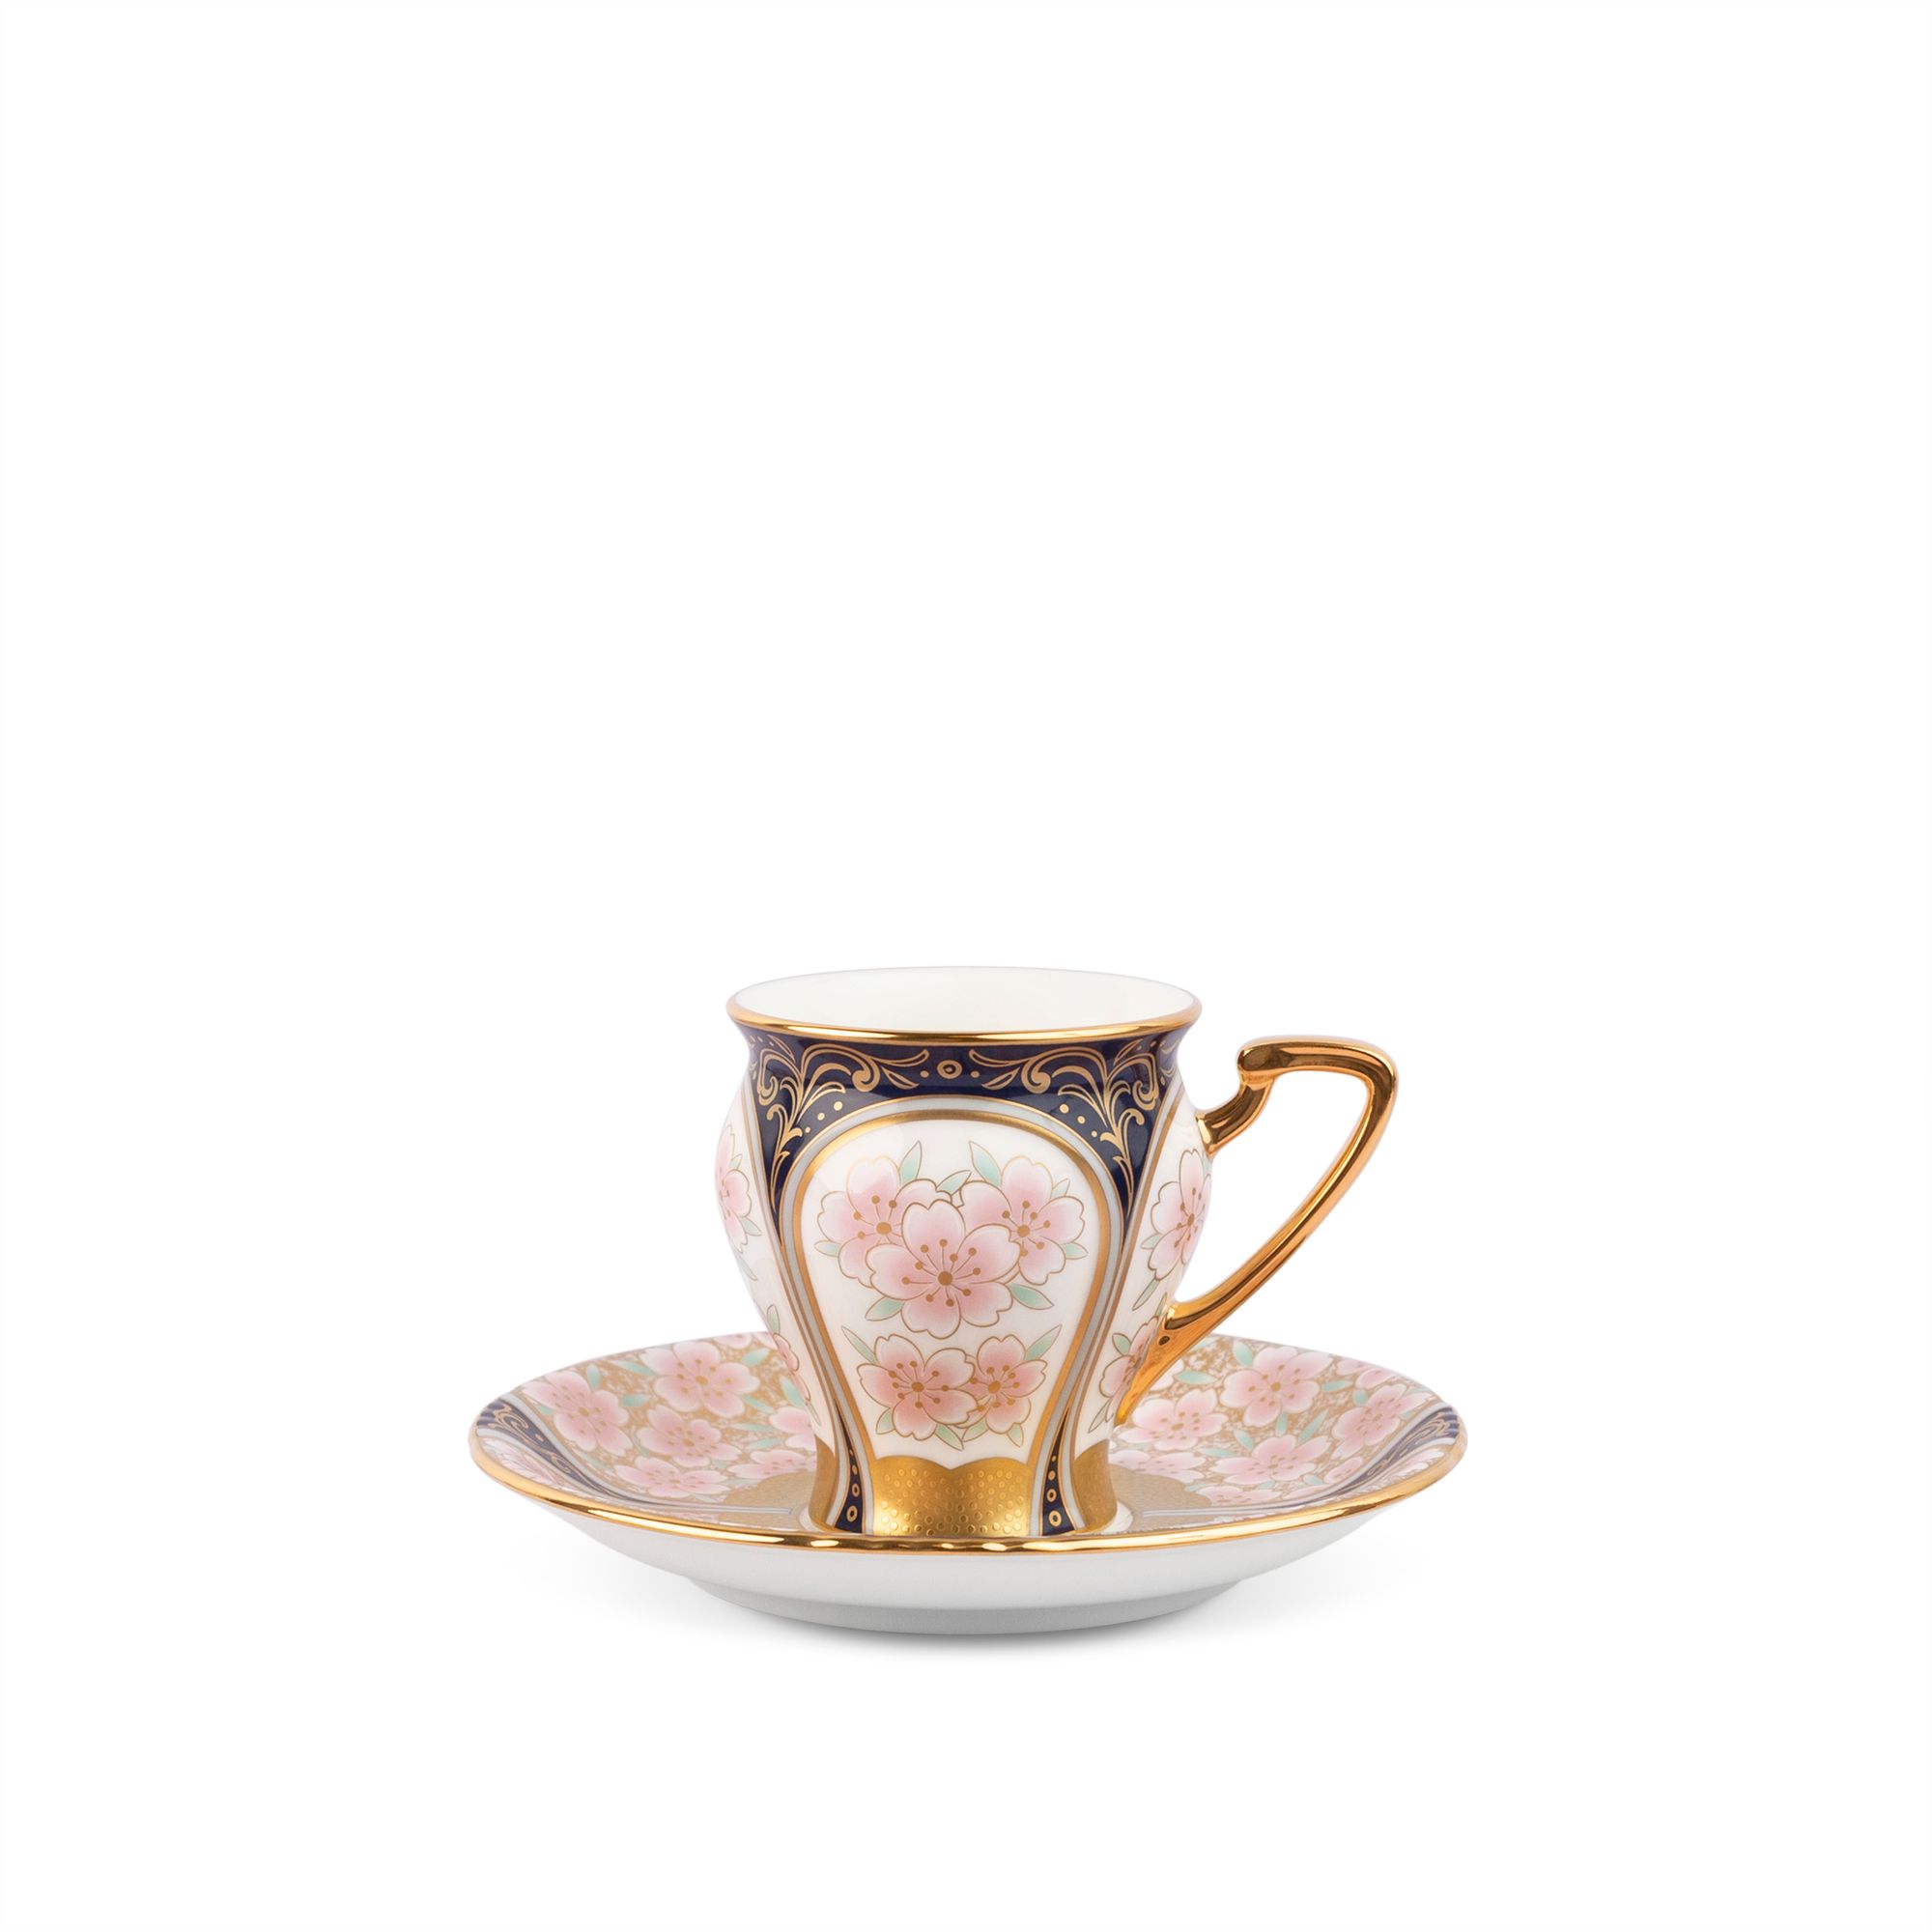  Chén trà (tách trà) kèm đĩa lót dung tích 180ml sứ xương | The Homage Collection H-881J-T52520 